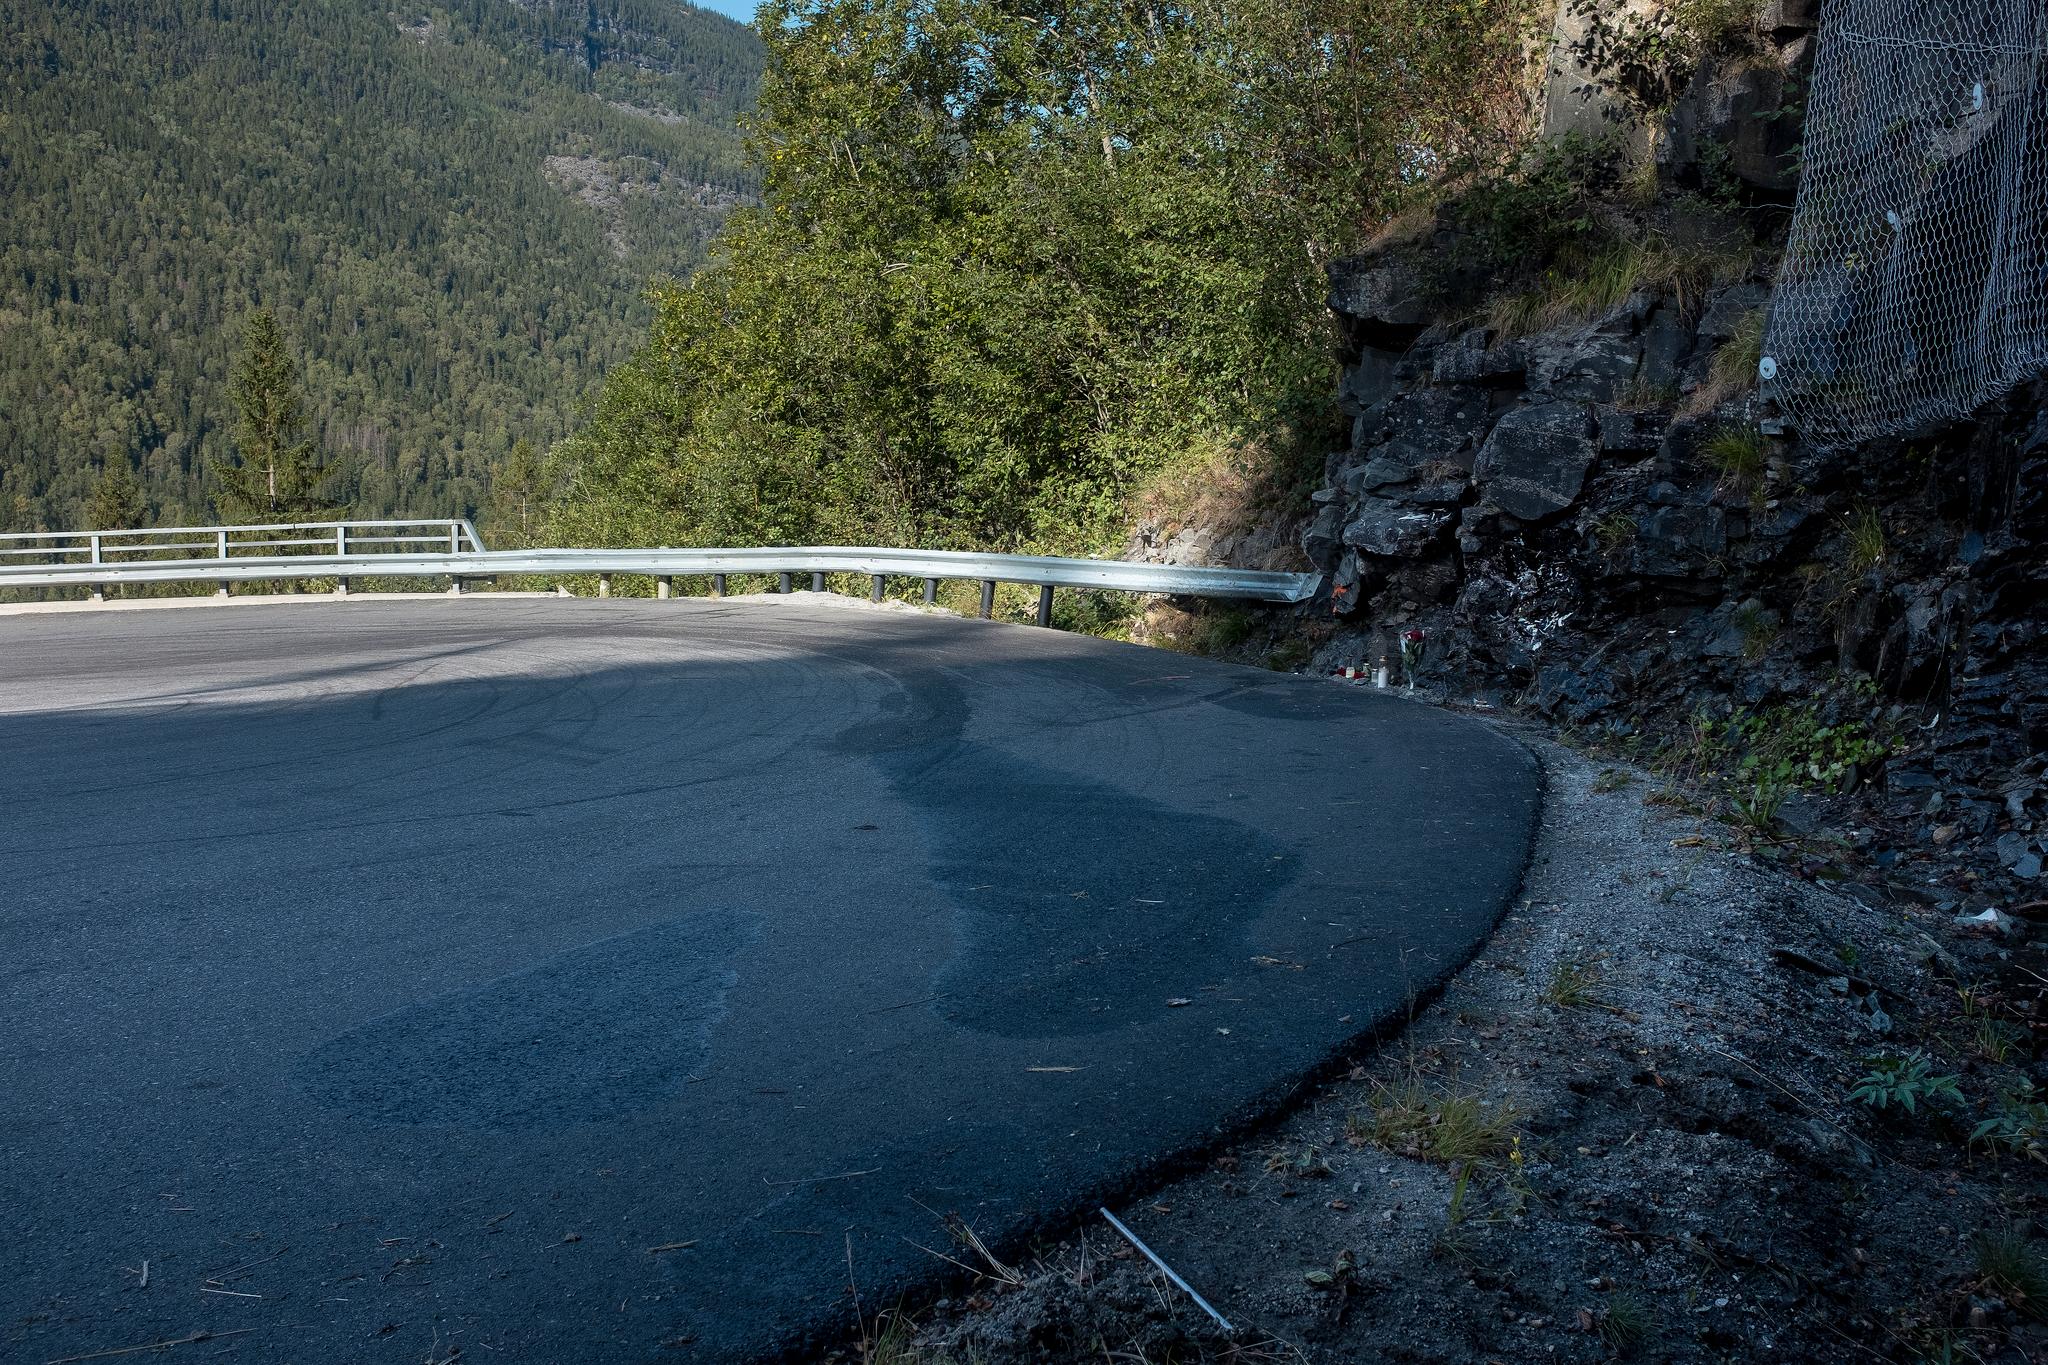 Tre kvinner og to menn omkom søndag etter at den amerikanske veteranbilen kjørte rett fram og inn i fjellveggen i denne svingen på Rjukan nær Gaustatoppen. Foto: Carina Johansen / NTB scanpix
